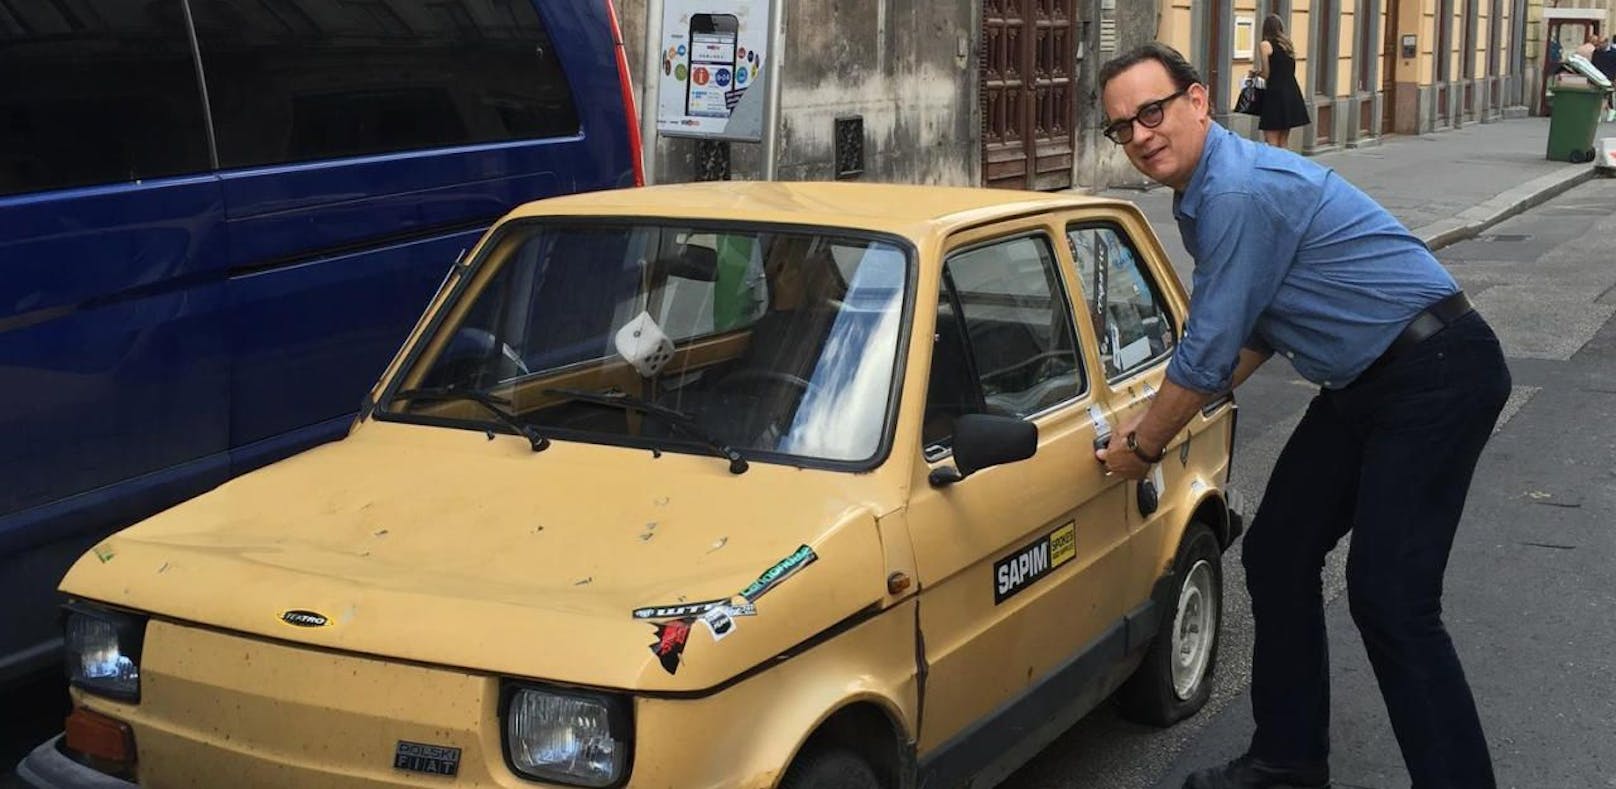 Polnische Fans schenken Tom Hanks ein Auto